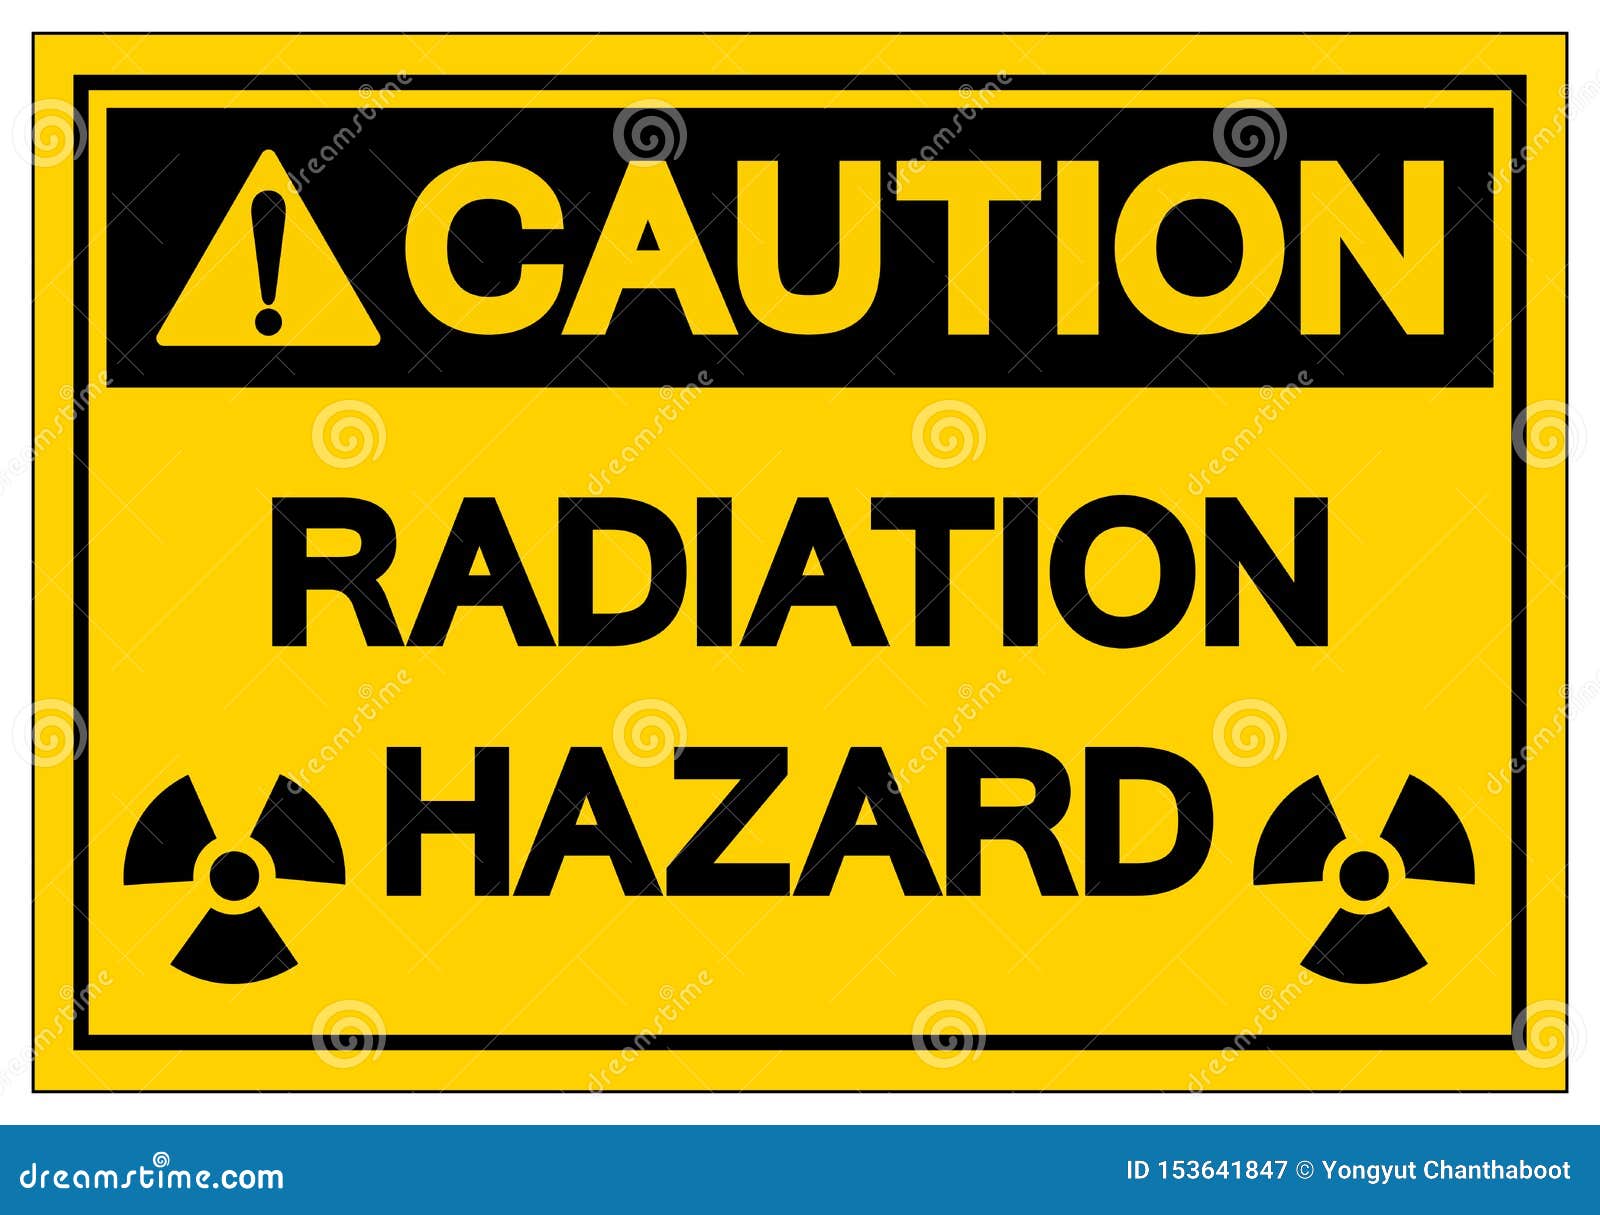 Caution Radiation Hazard Symbol Sign, Vector Illustration, Isolate on ...